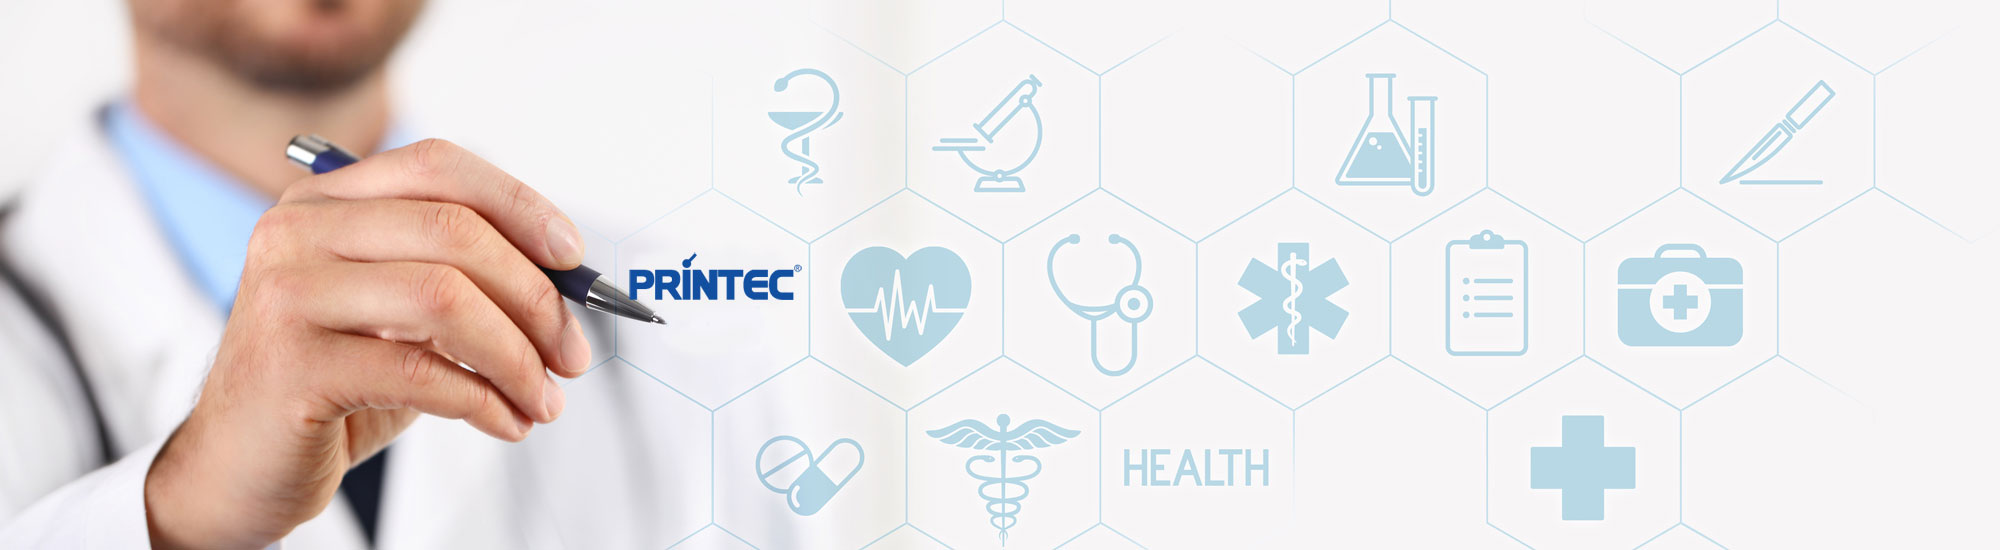 printec hc medical hmi manufacturer